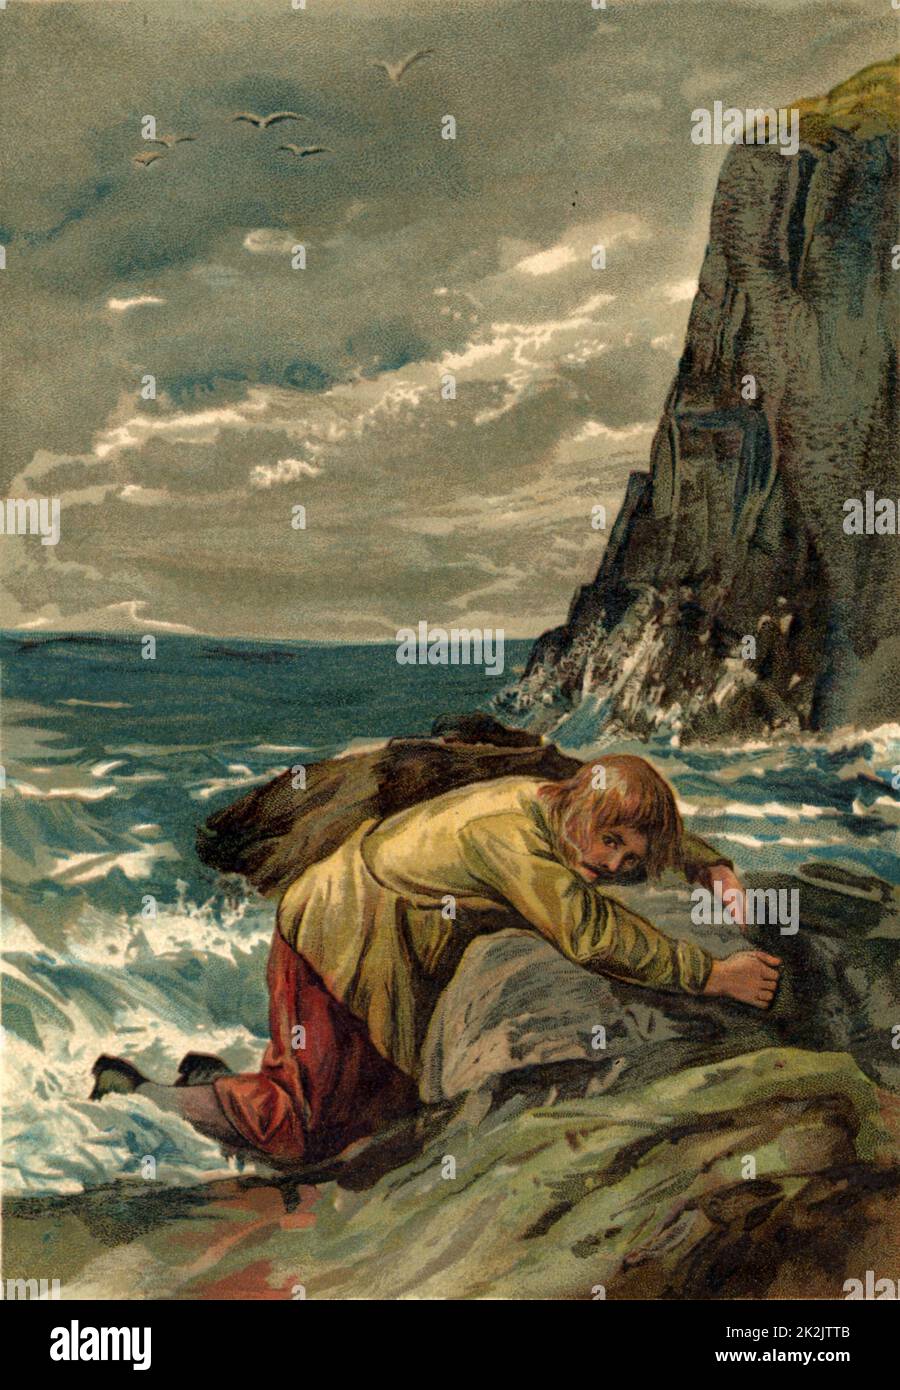 Robinson Crusoe, dopo il naufragio, si è lavato sulle rocce dalle onde. Chromolithograph da 'The Life and Strange Surprising Adventures of Robinson Crusoe' di Daniel Defoe (Londra, 1891). Il libro è stato pubblicato per la prima volta nel 1719. Illustrazione di John Dawson Watson (1832-1892). Foto Stock